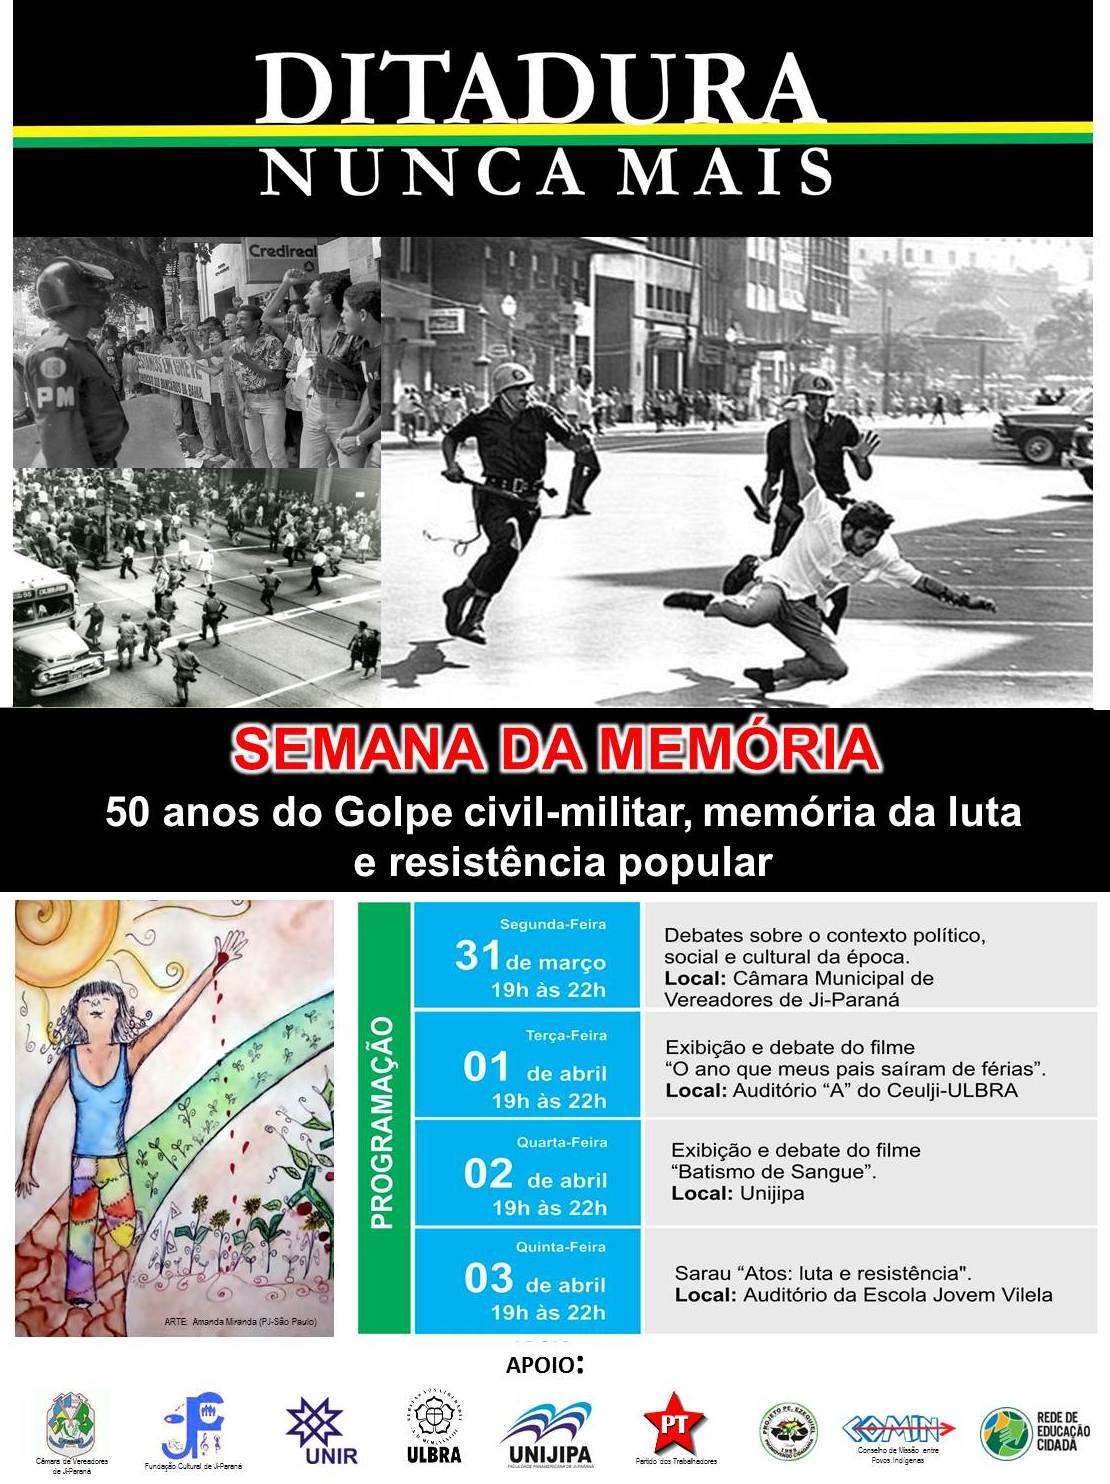 Semana de Memória dos 50 Anos do Golpe Civil Militar. Memoria da luta e resistência popular.